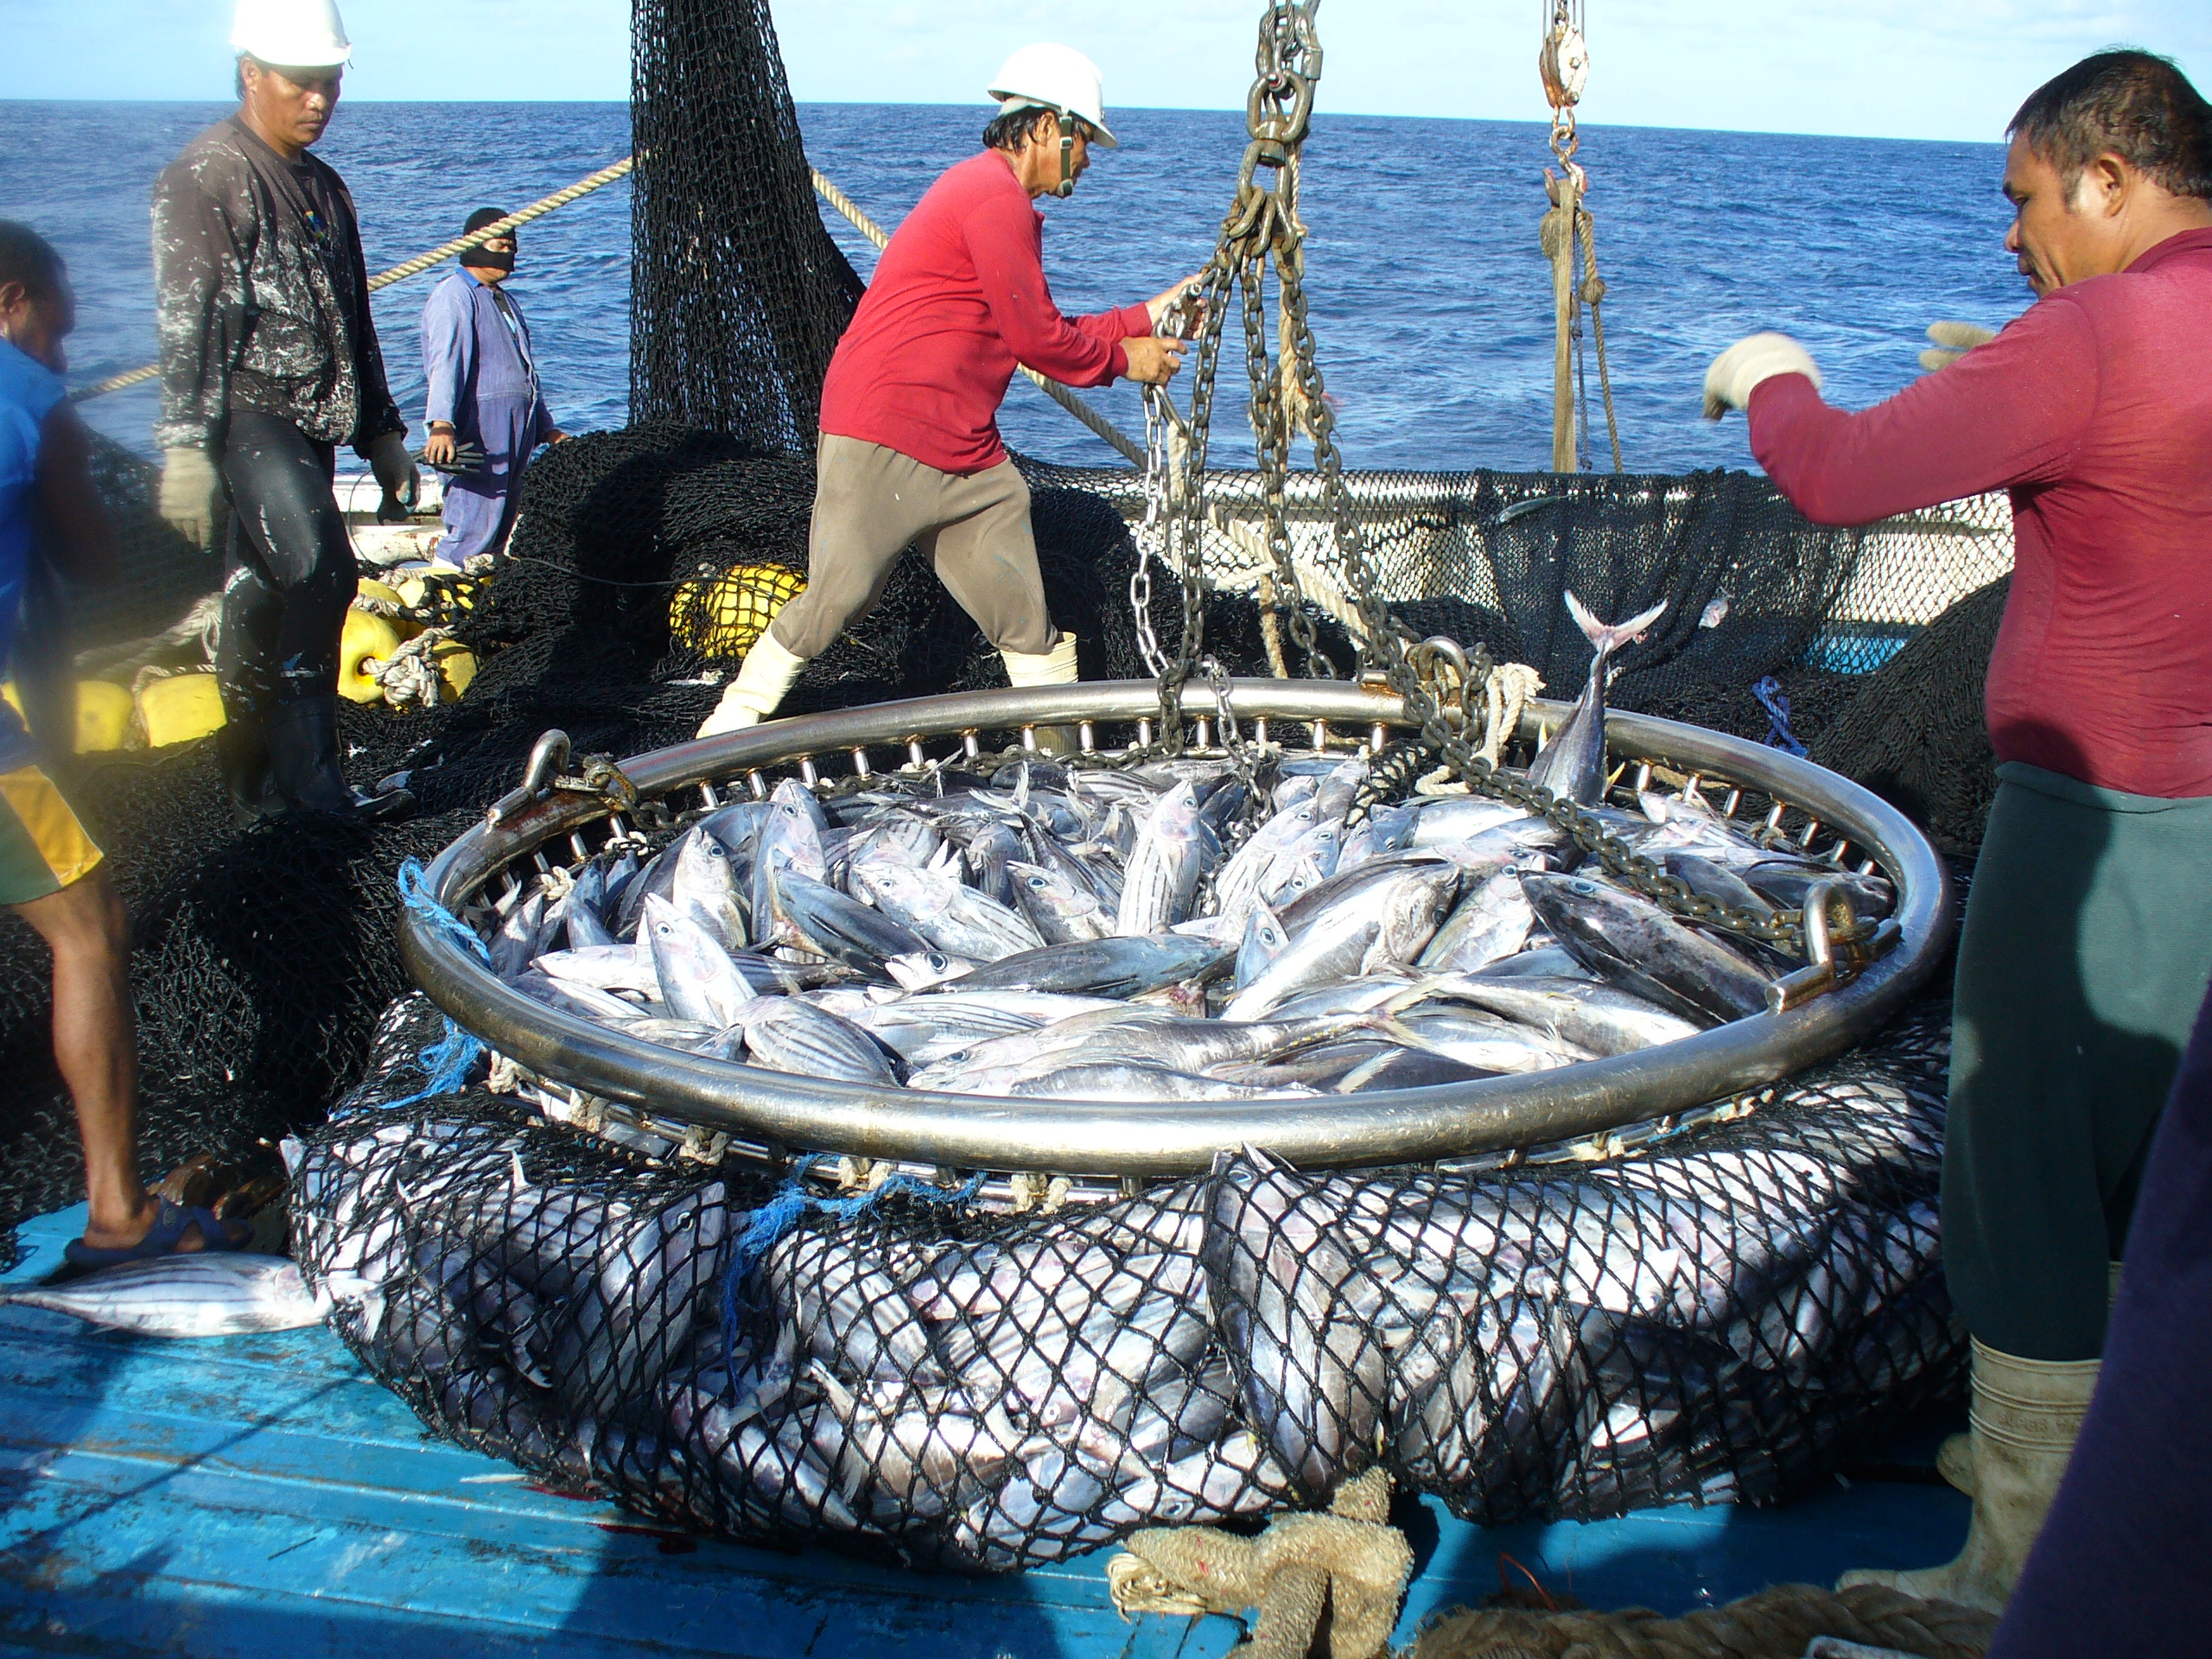 Catching tuna on boat